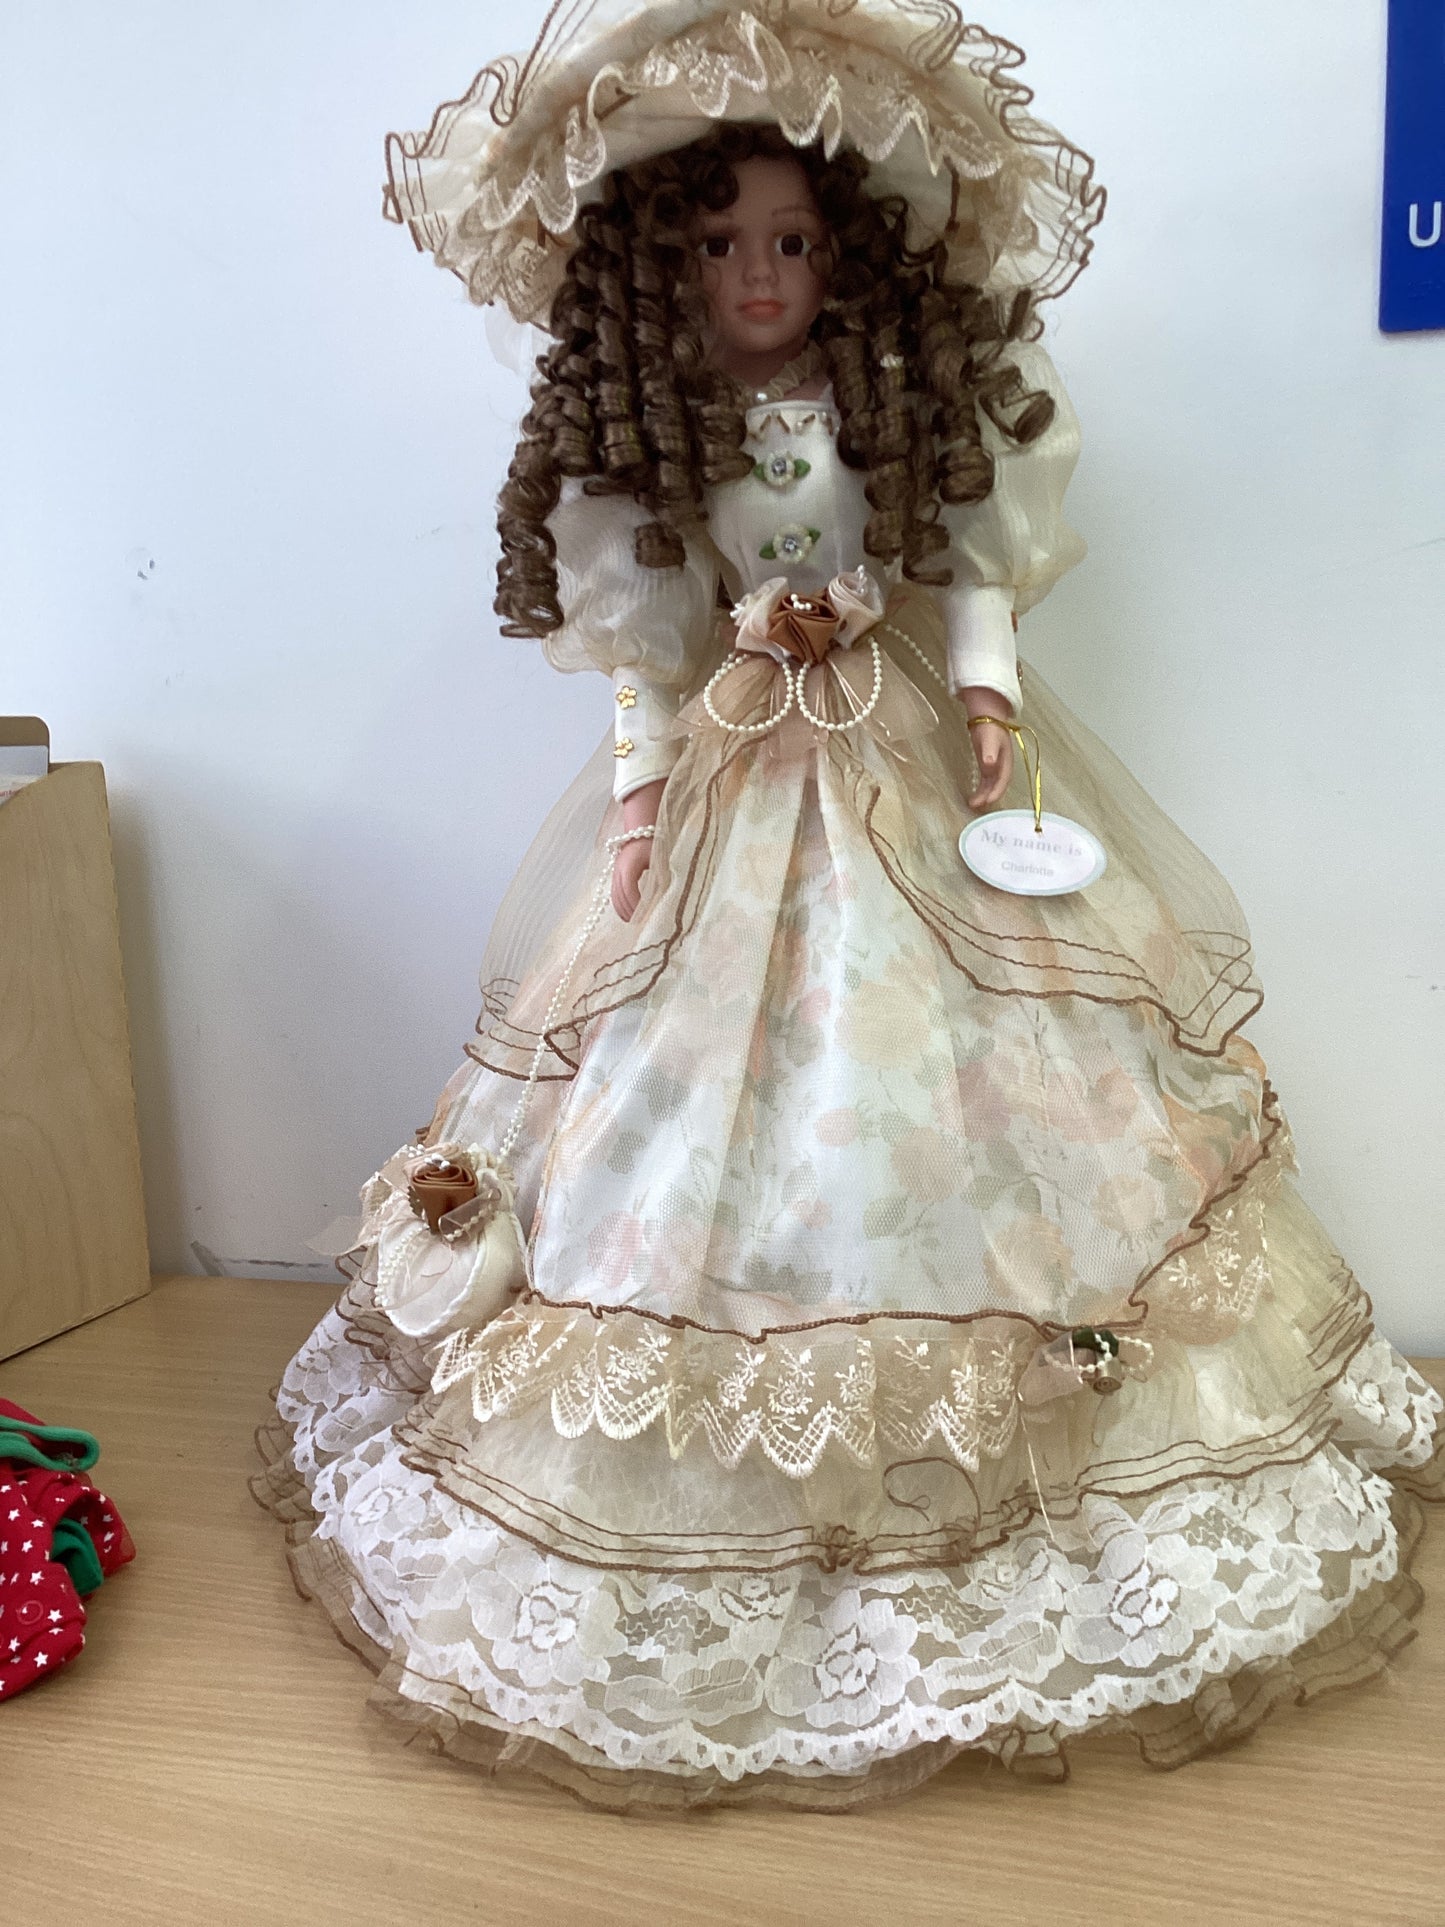 Vintage porcelain doll - Collectors doll